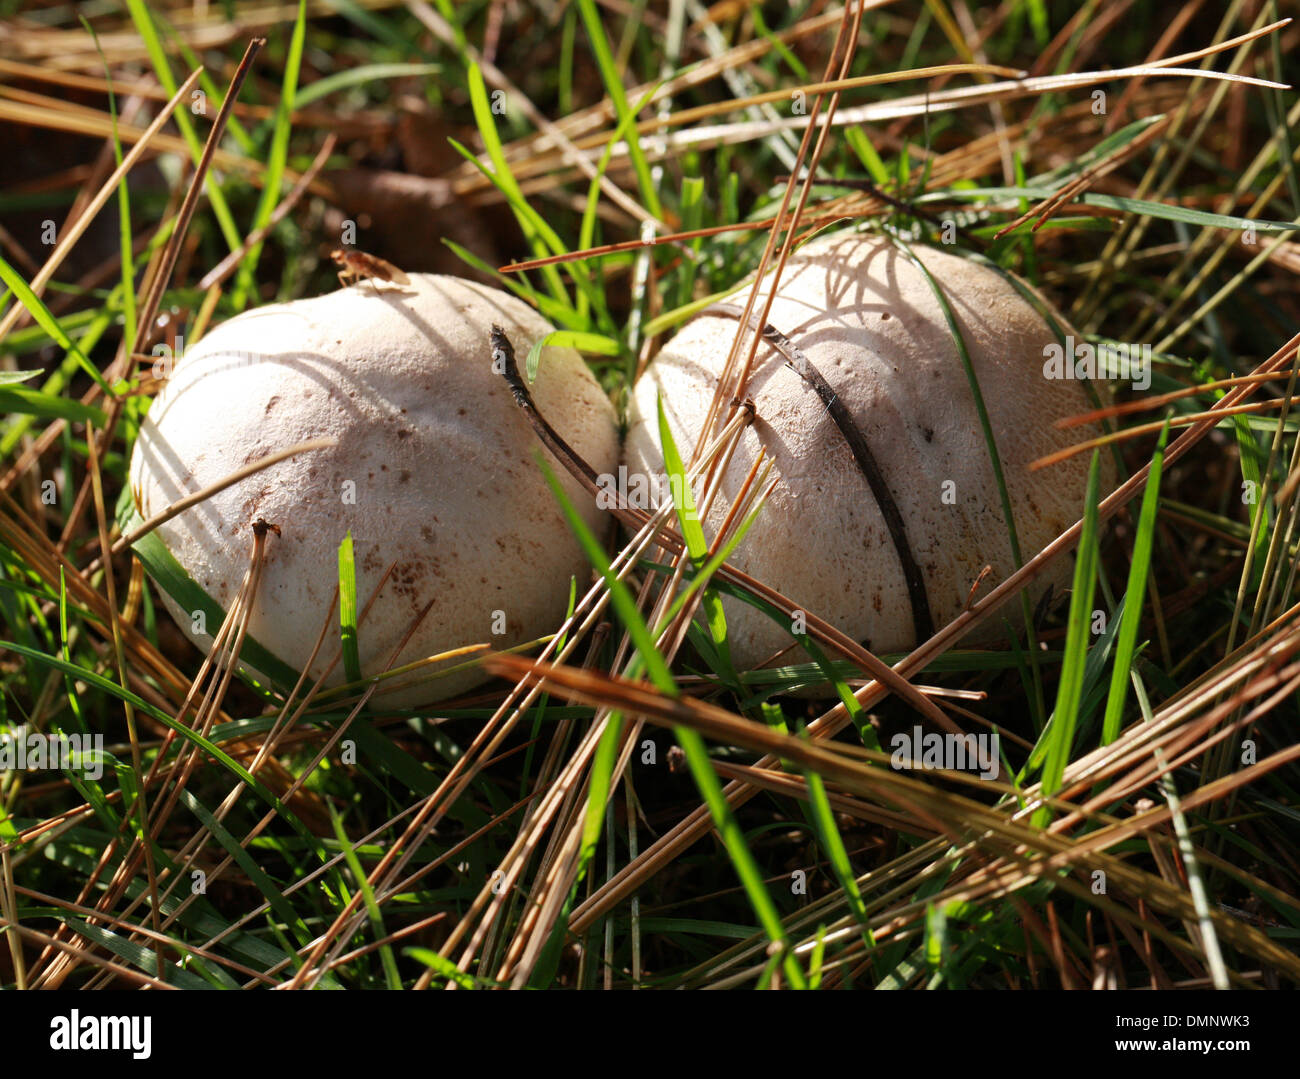 Cultivated Mushroom, Agaricus bisporus, Agaricaceae. Wild form. Stock Photo